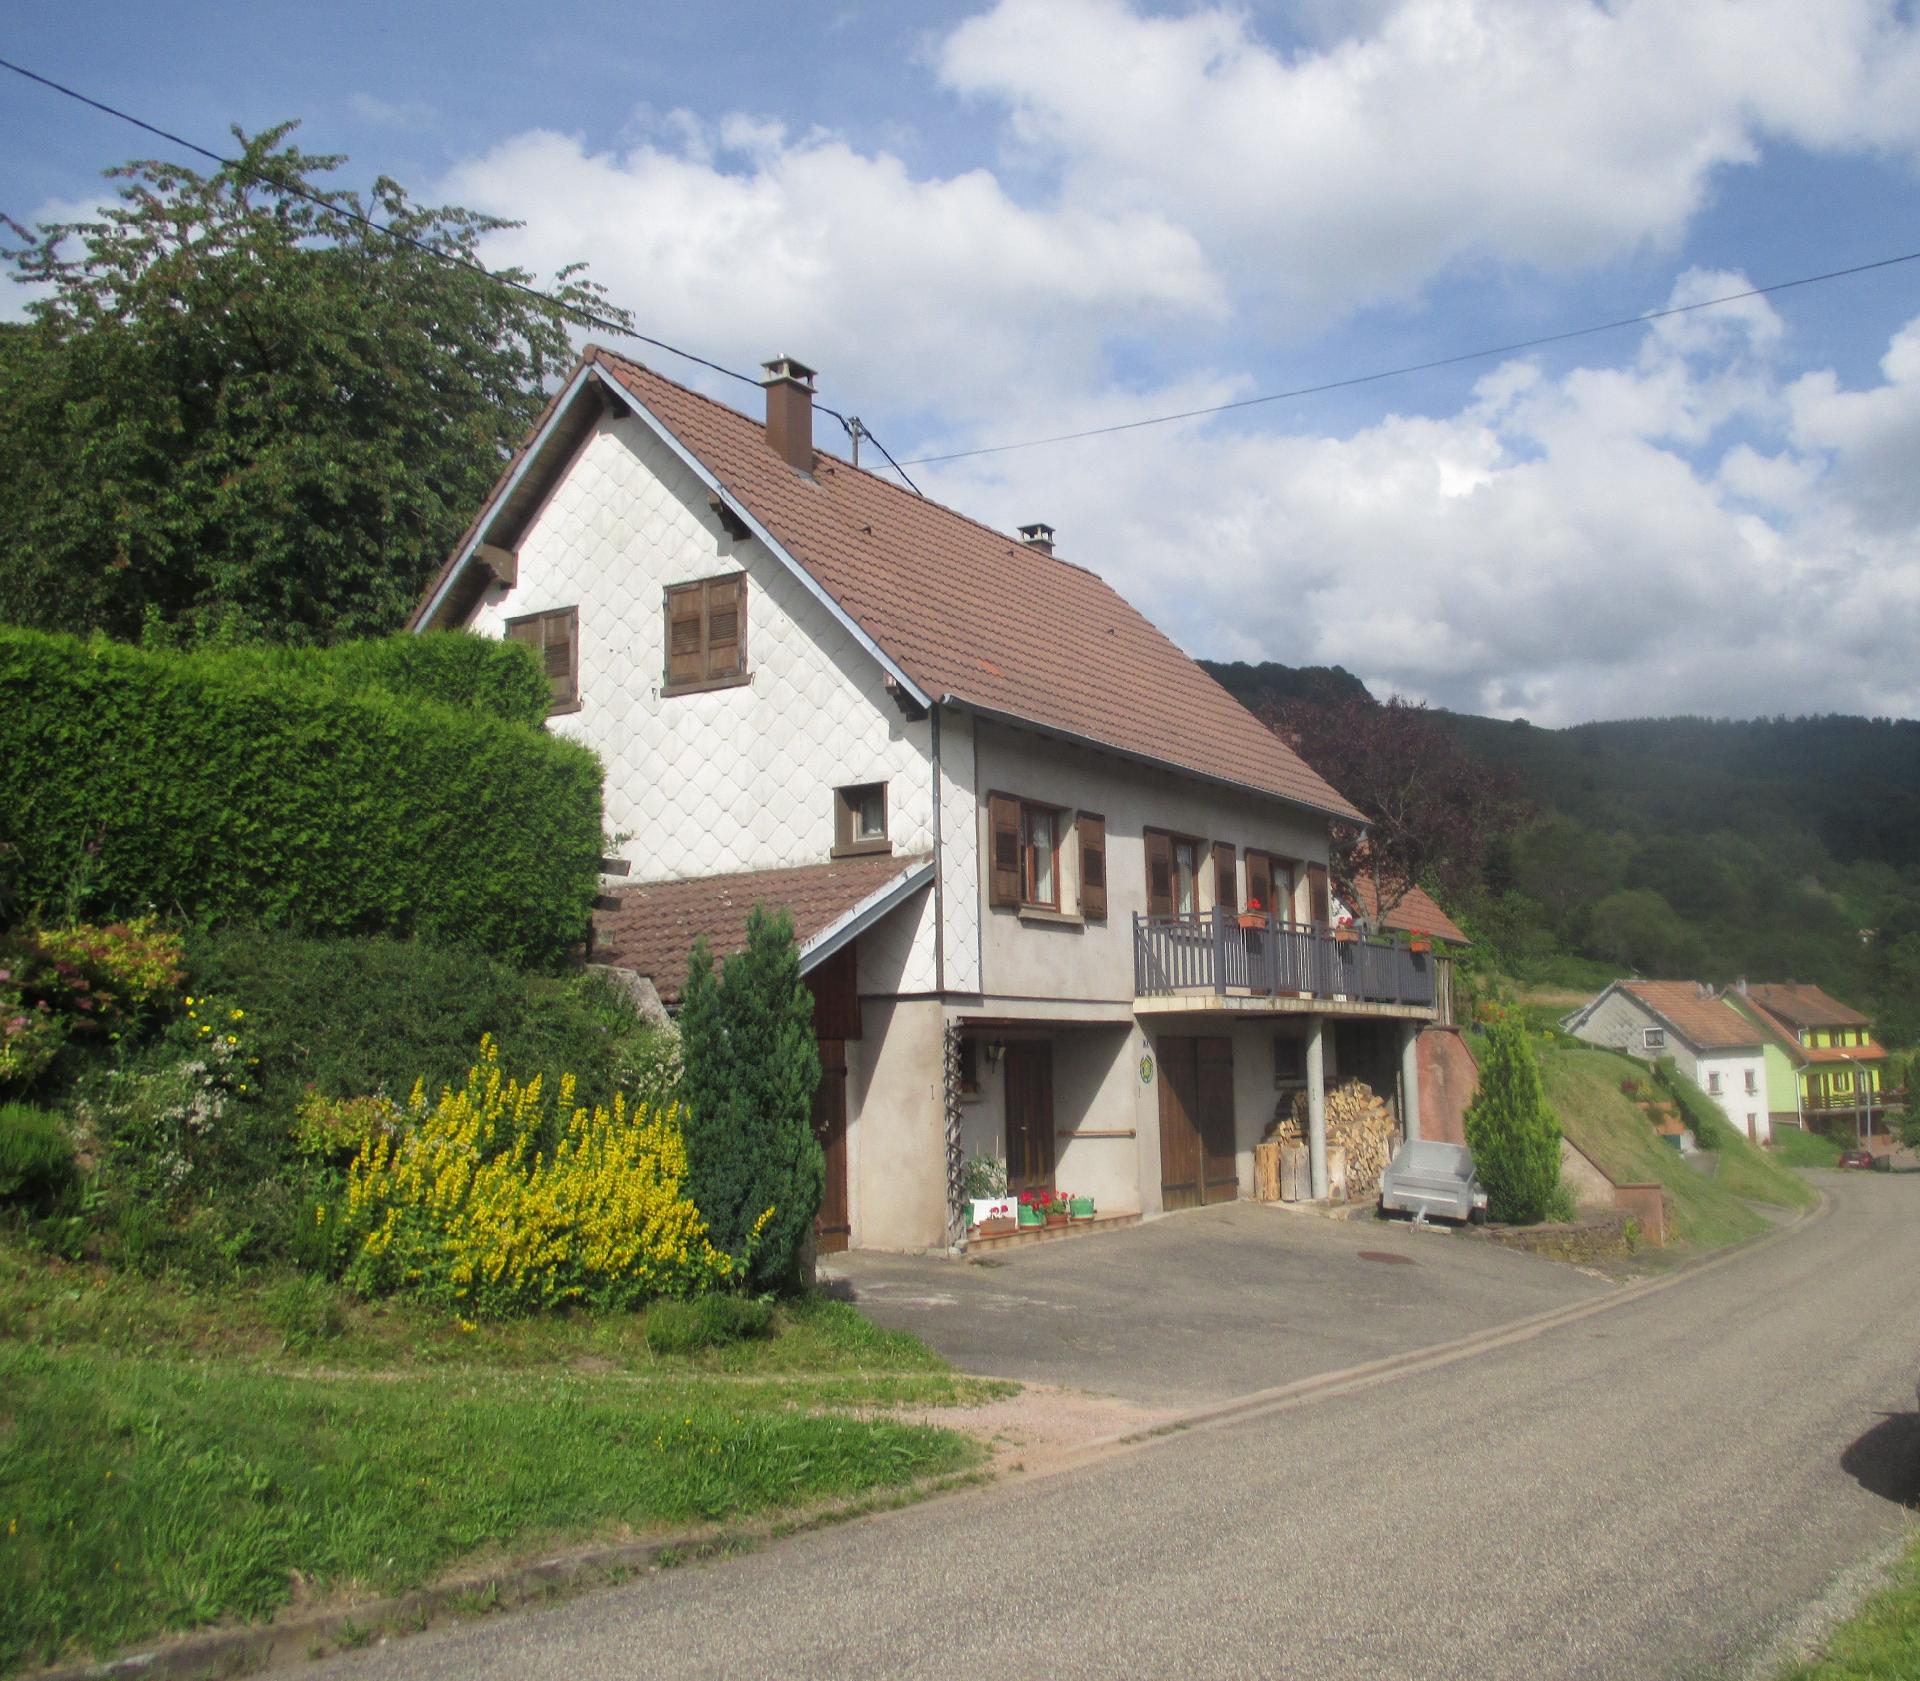  Ferienhaus mitten im Dorfkern in ruhiger Lage mit Ferienhaus in Frankreich